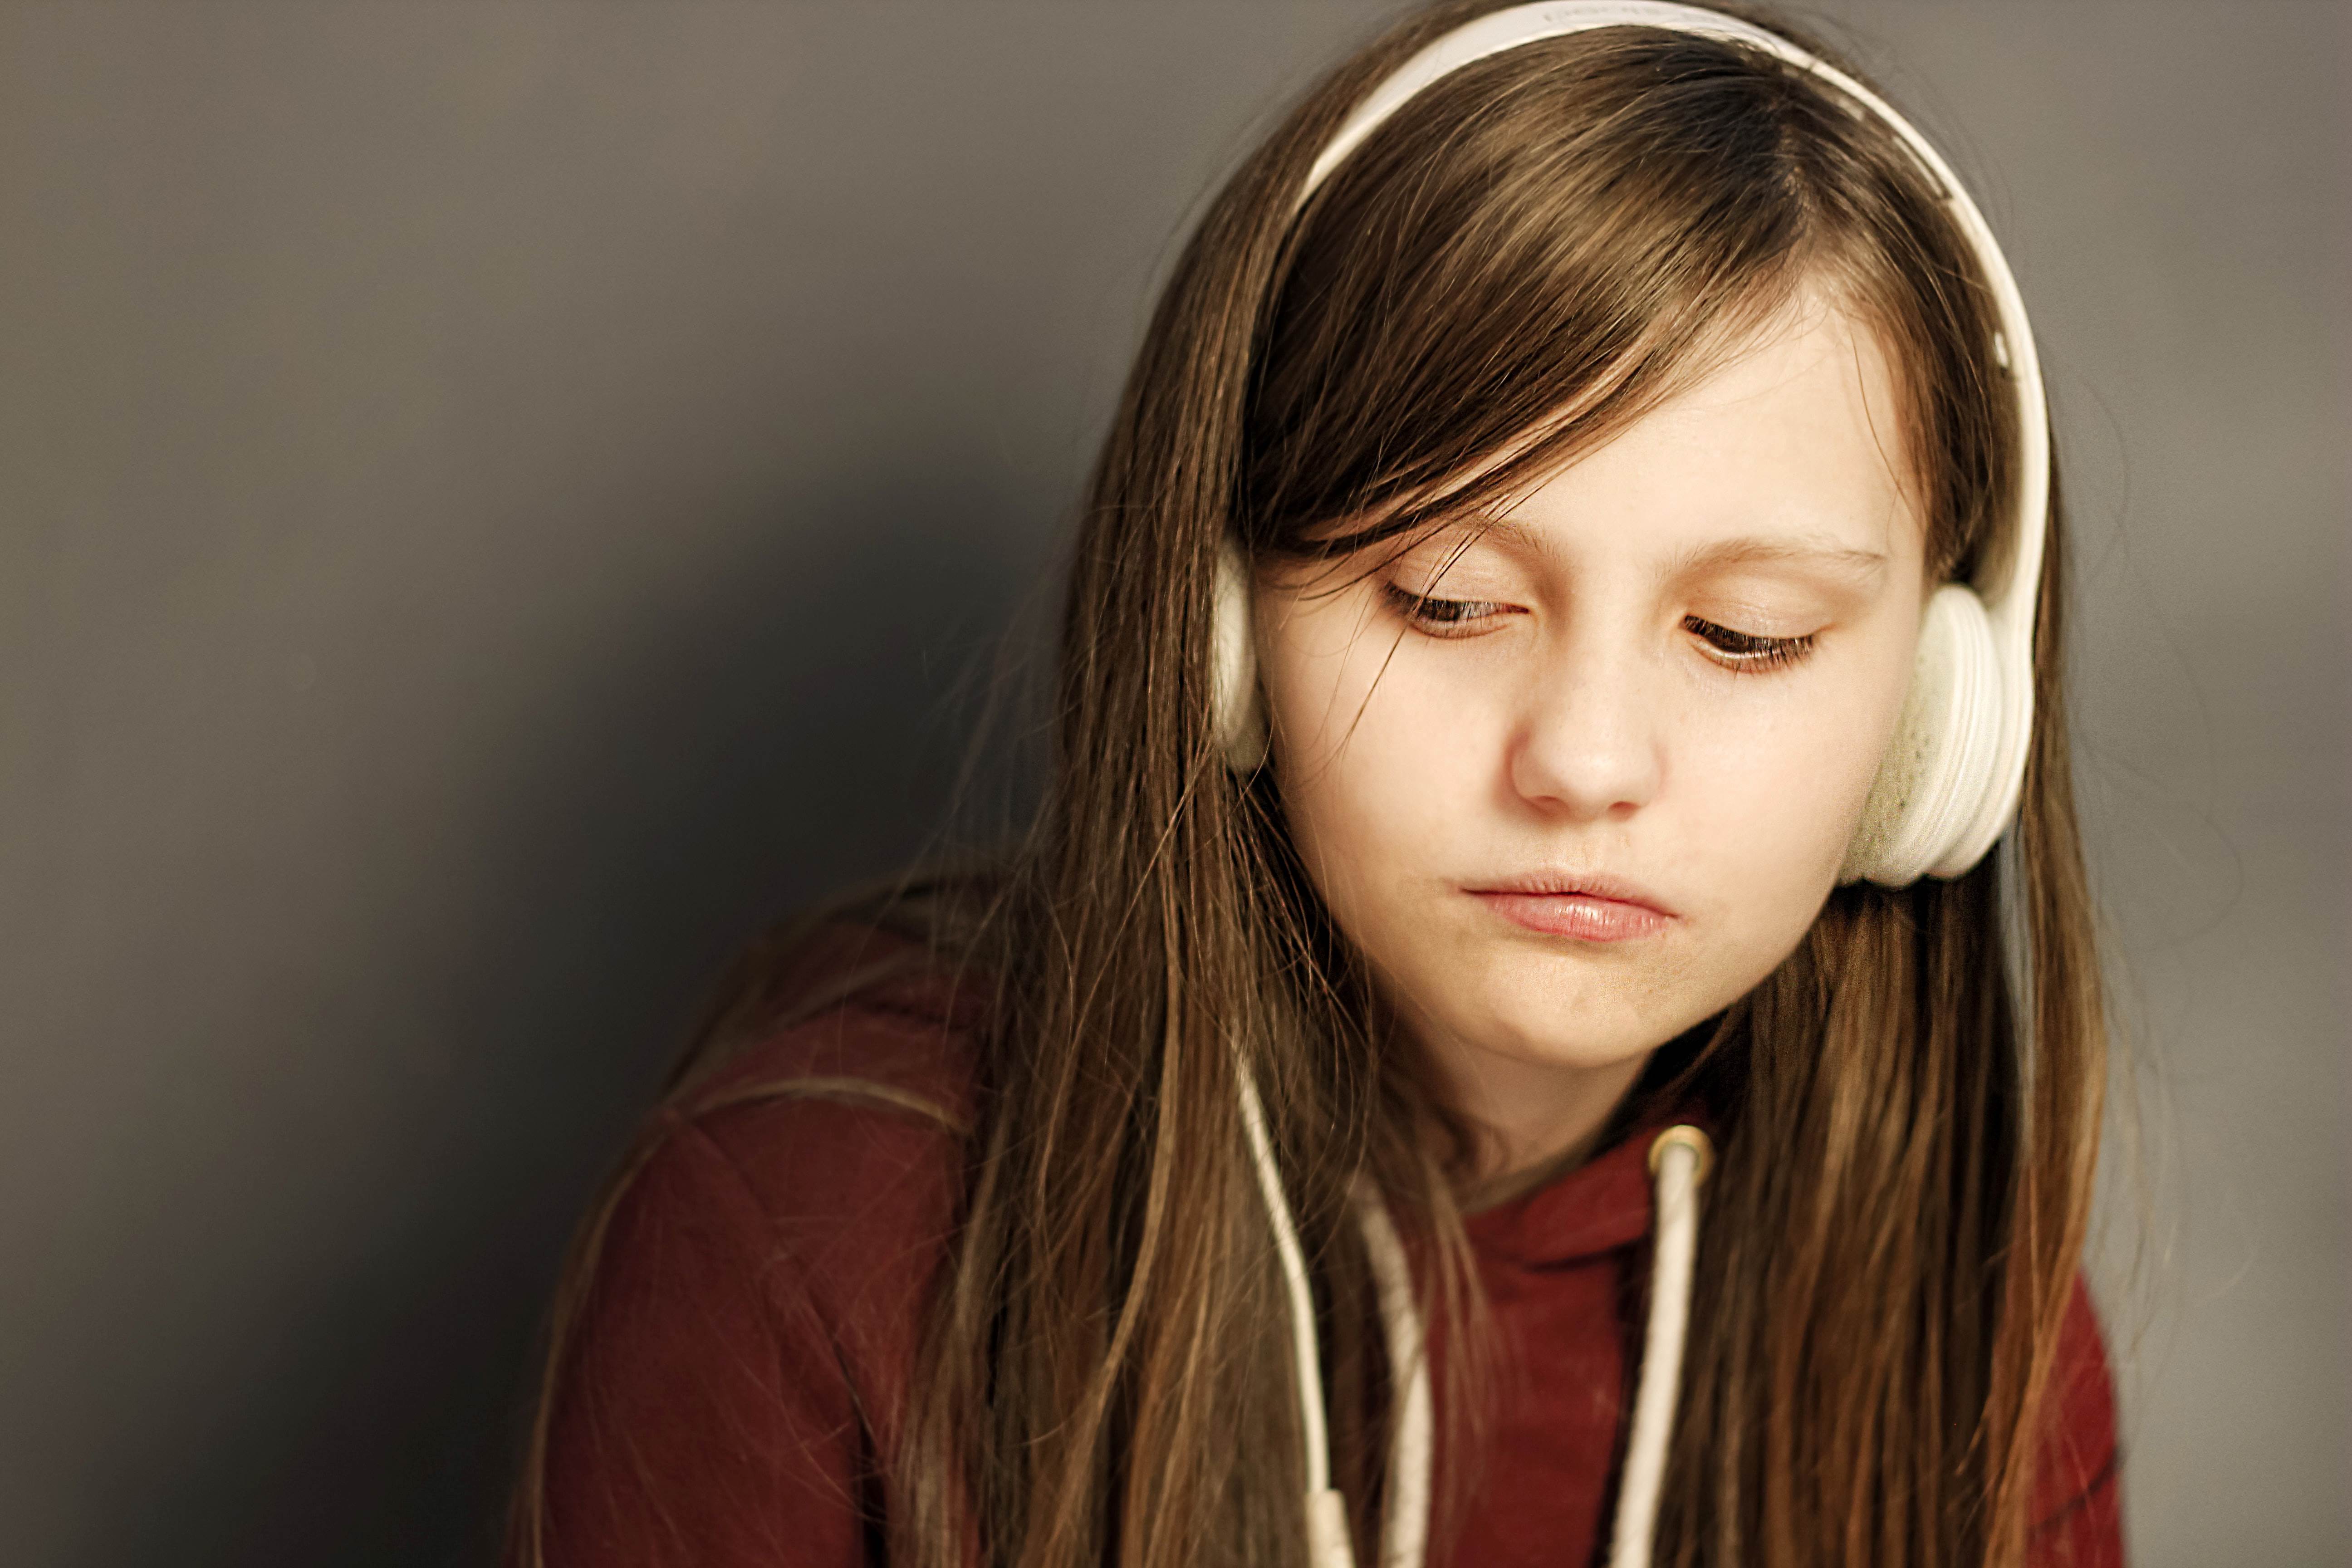 Young girl wearing headphones